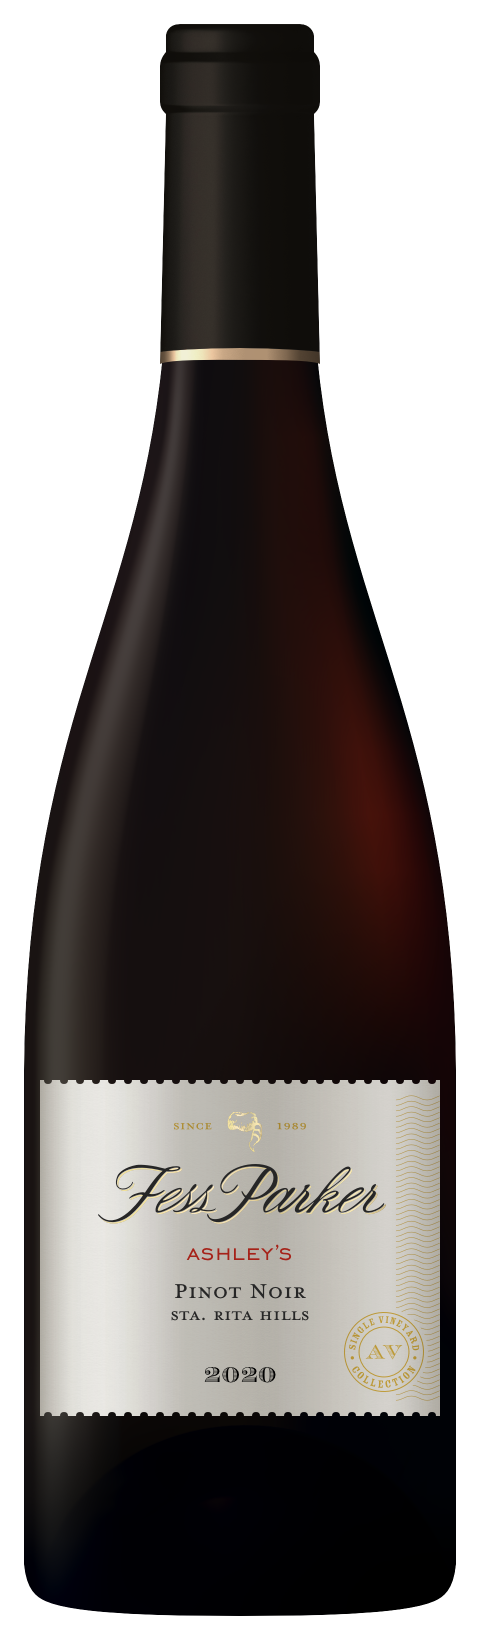 Bottle shot of Ashley's Pinot Noir